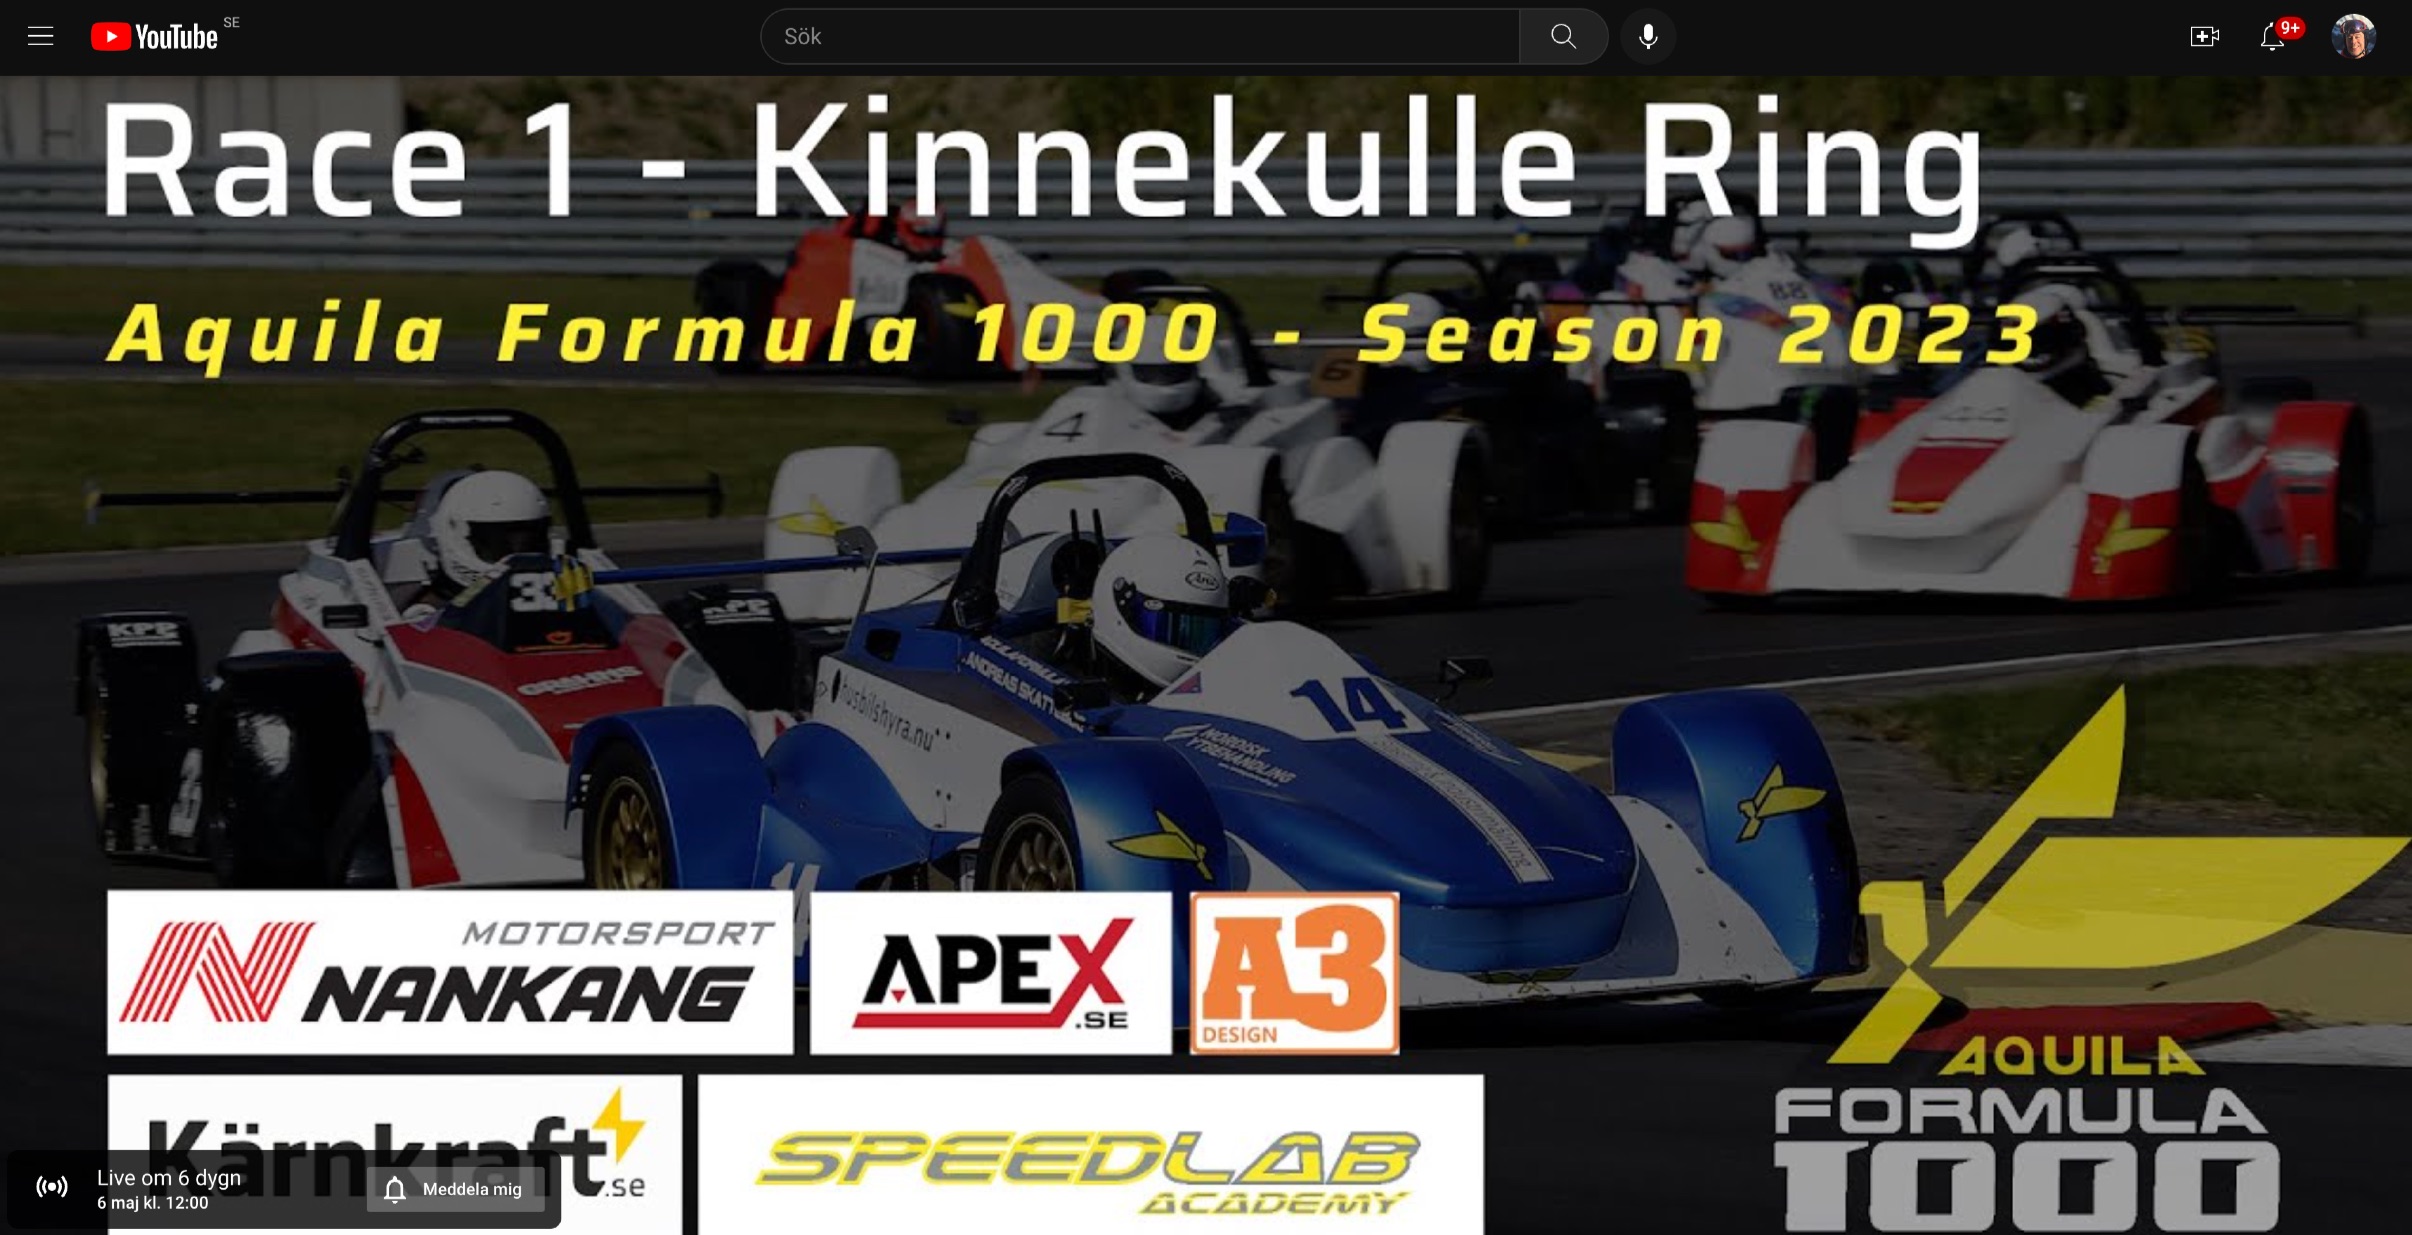 Livesstreaming-links to the season opener for 2023 at Kinnekulle Ring!